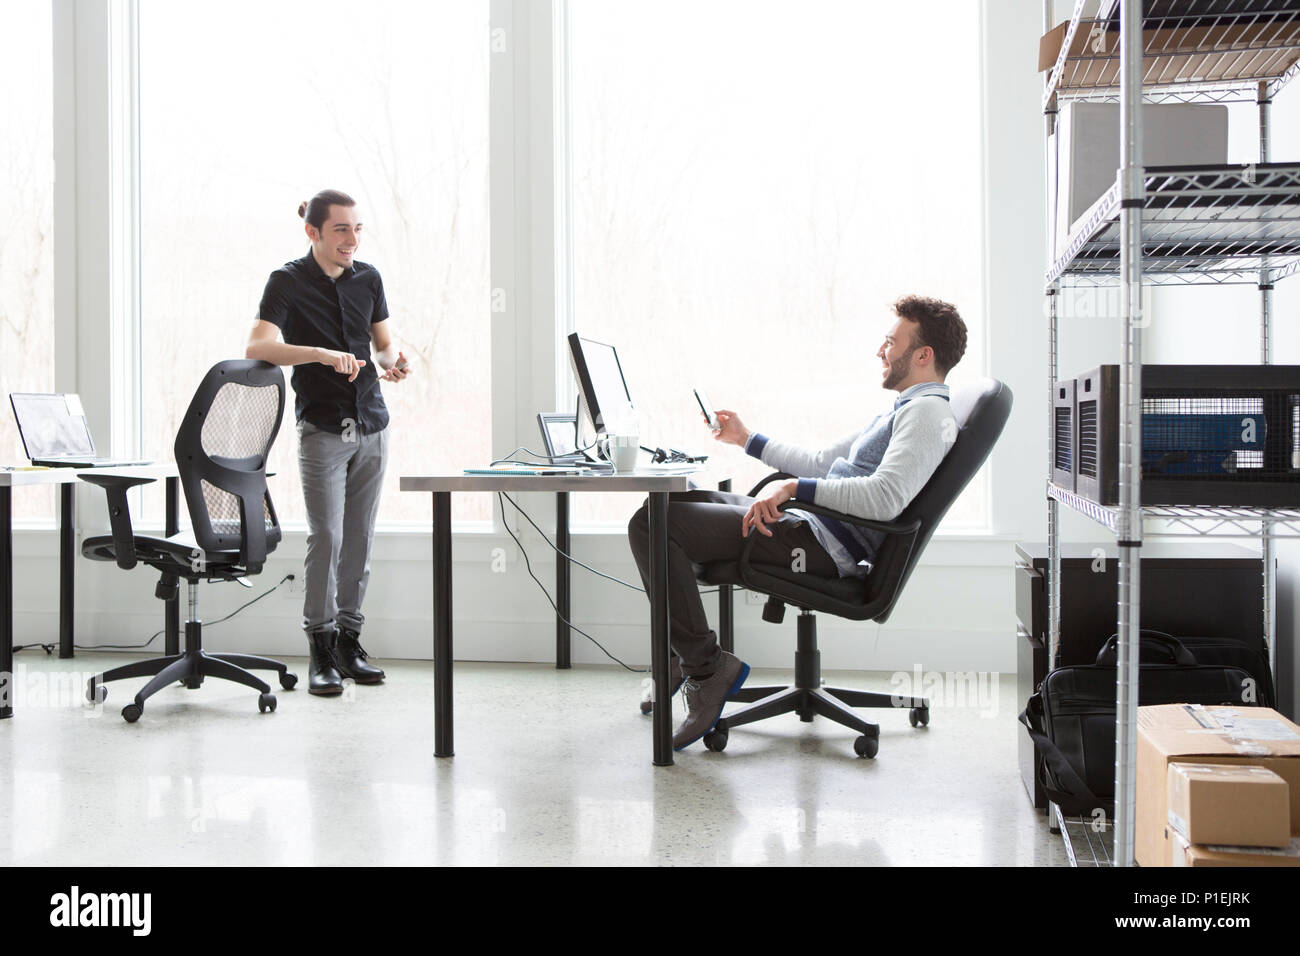 Junge Geschäftsleute mit einem unbeschwerten Moment beim Brainstorming in einem hellen, modernen Office.Business-Konzept. Stockfoto